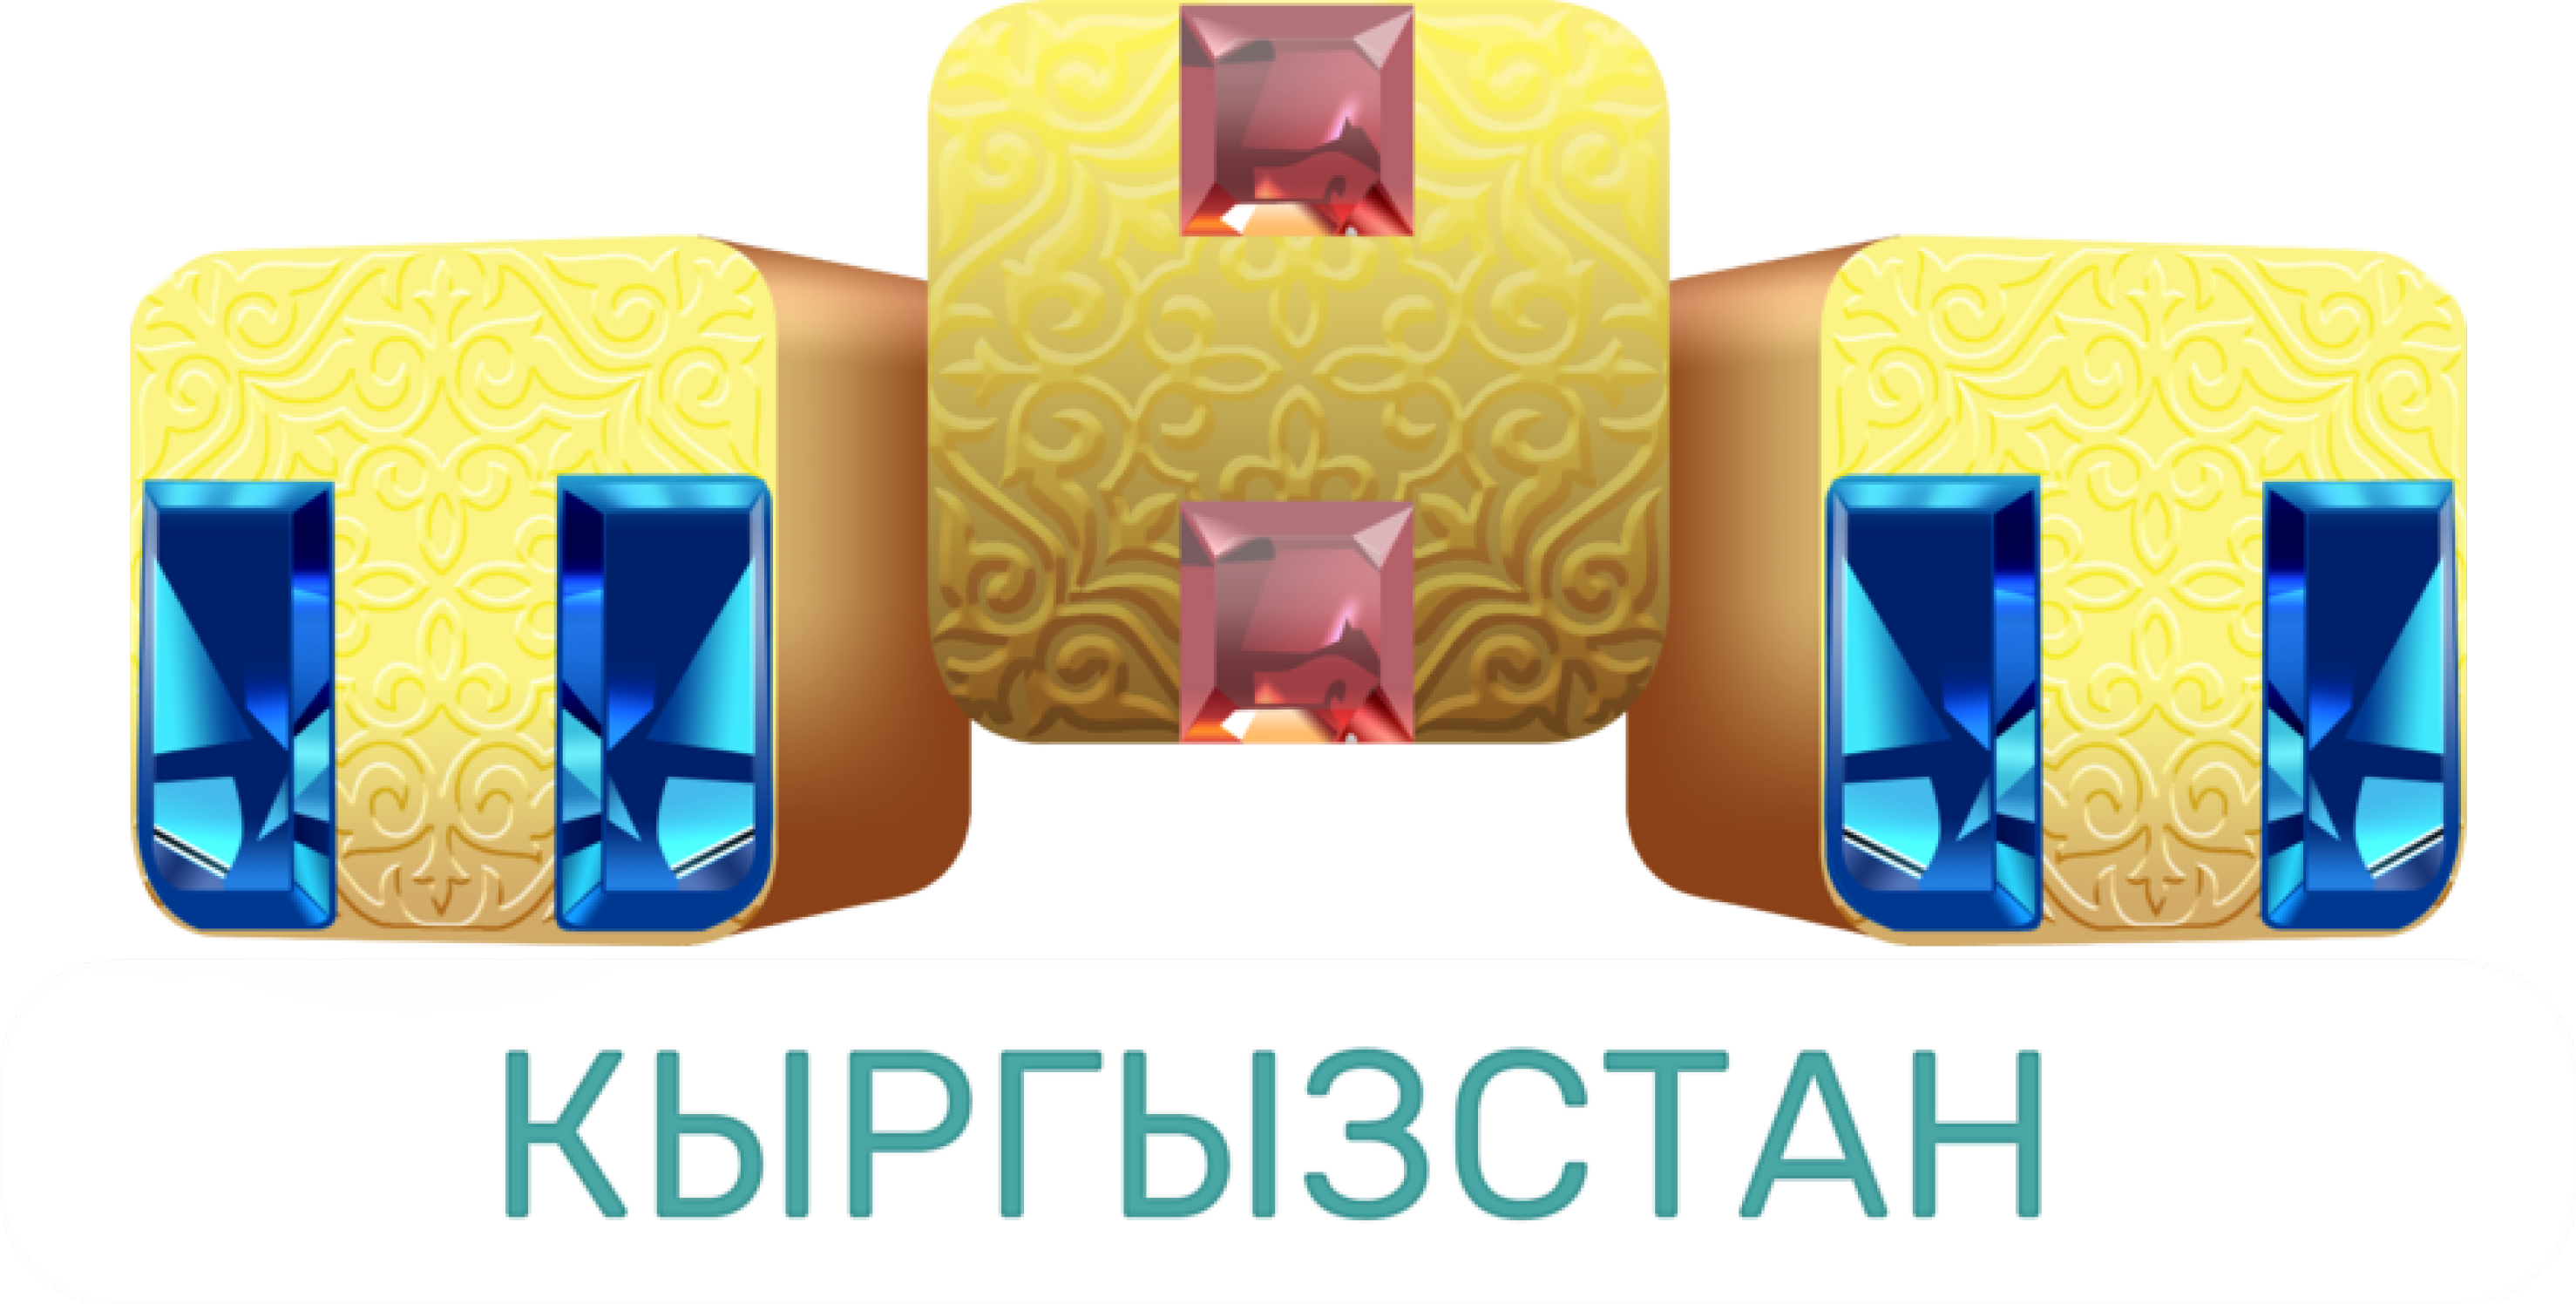 ТНТ-International Беларусь. Логотип ТНТ 2021-2022. ТНТ International Беларусь логотип. Телеканал ТНТ.